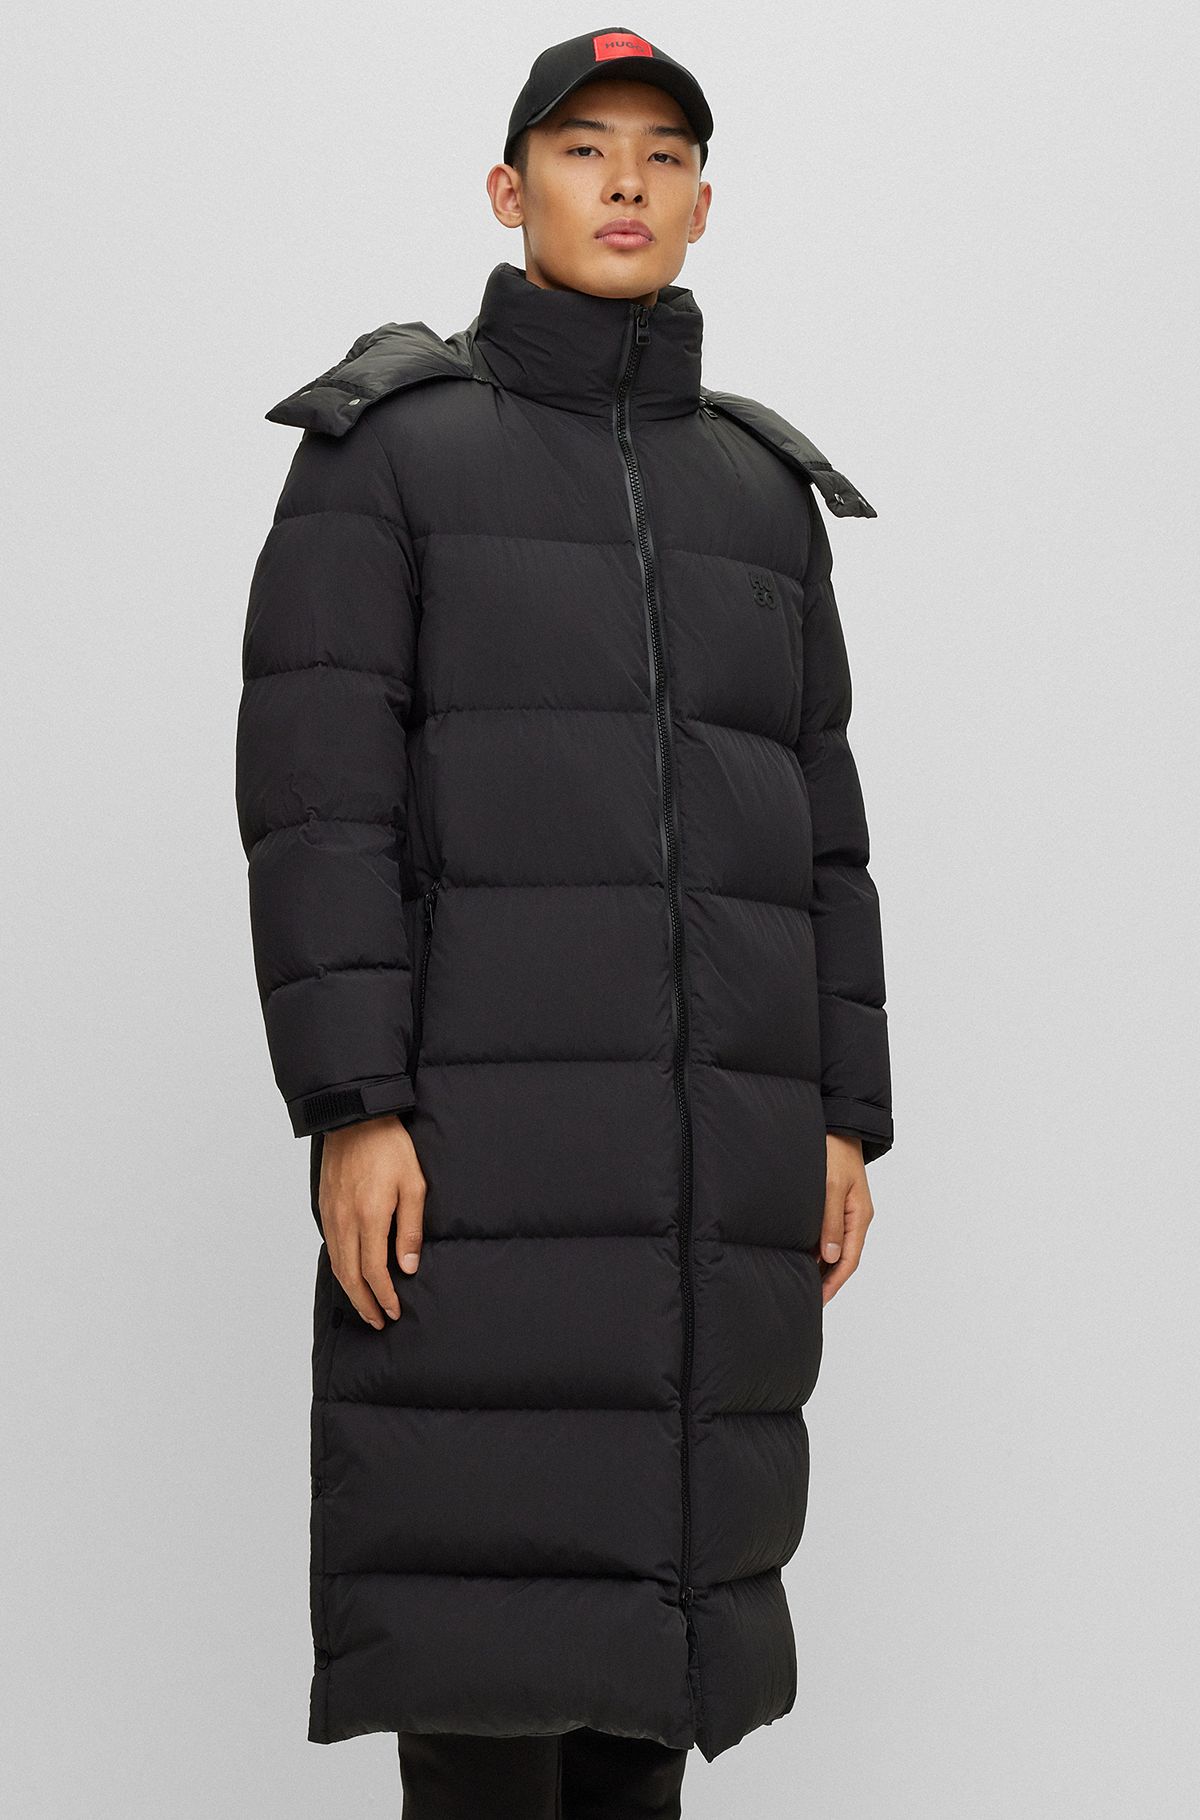 Buy Formal Wool Coat Black Online, Winter Coats For Men